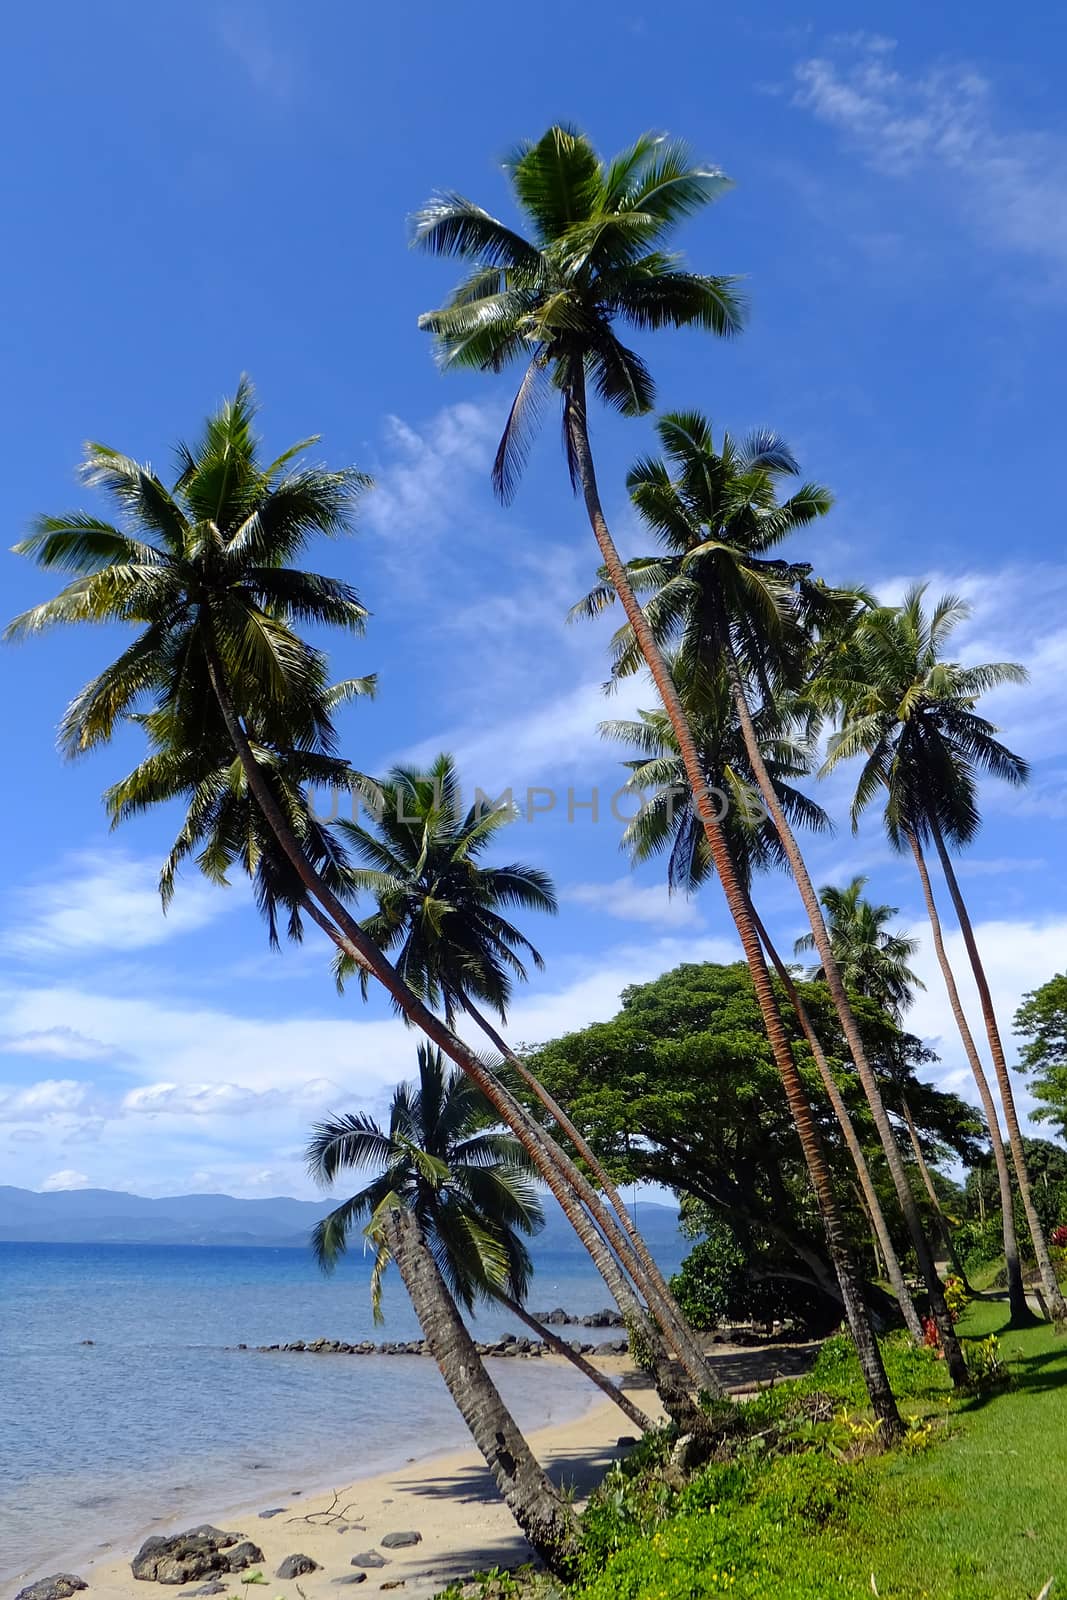 Palm trees on a beach, Vanua Levu island, Fiji by donya_nedomam